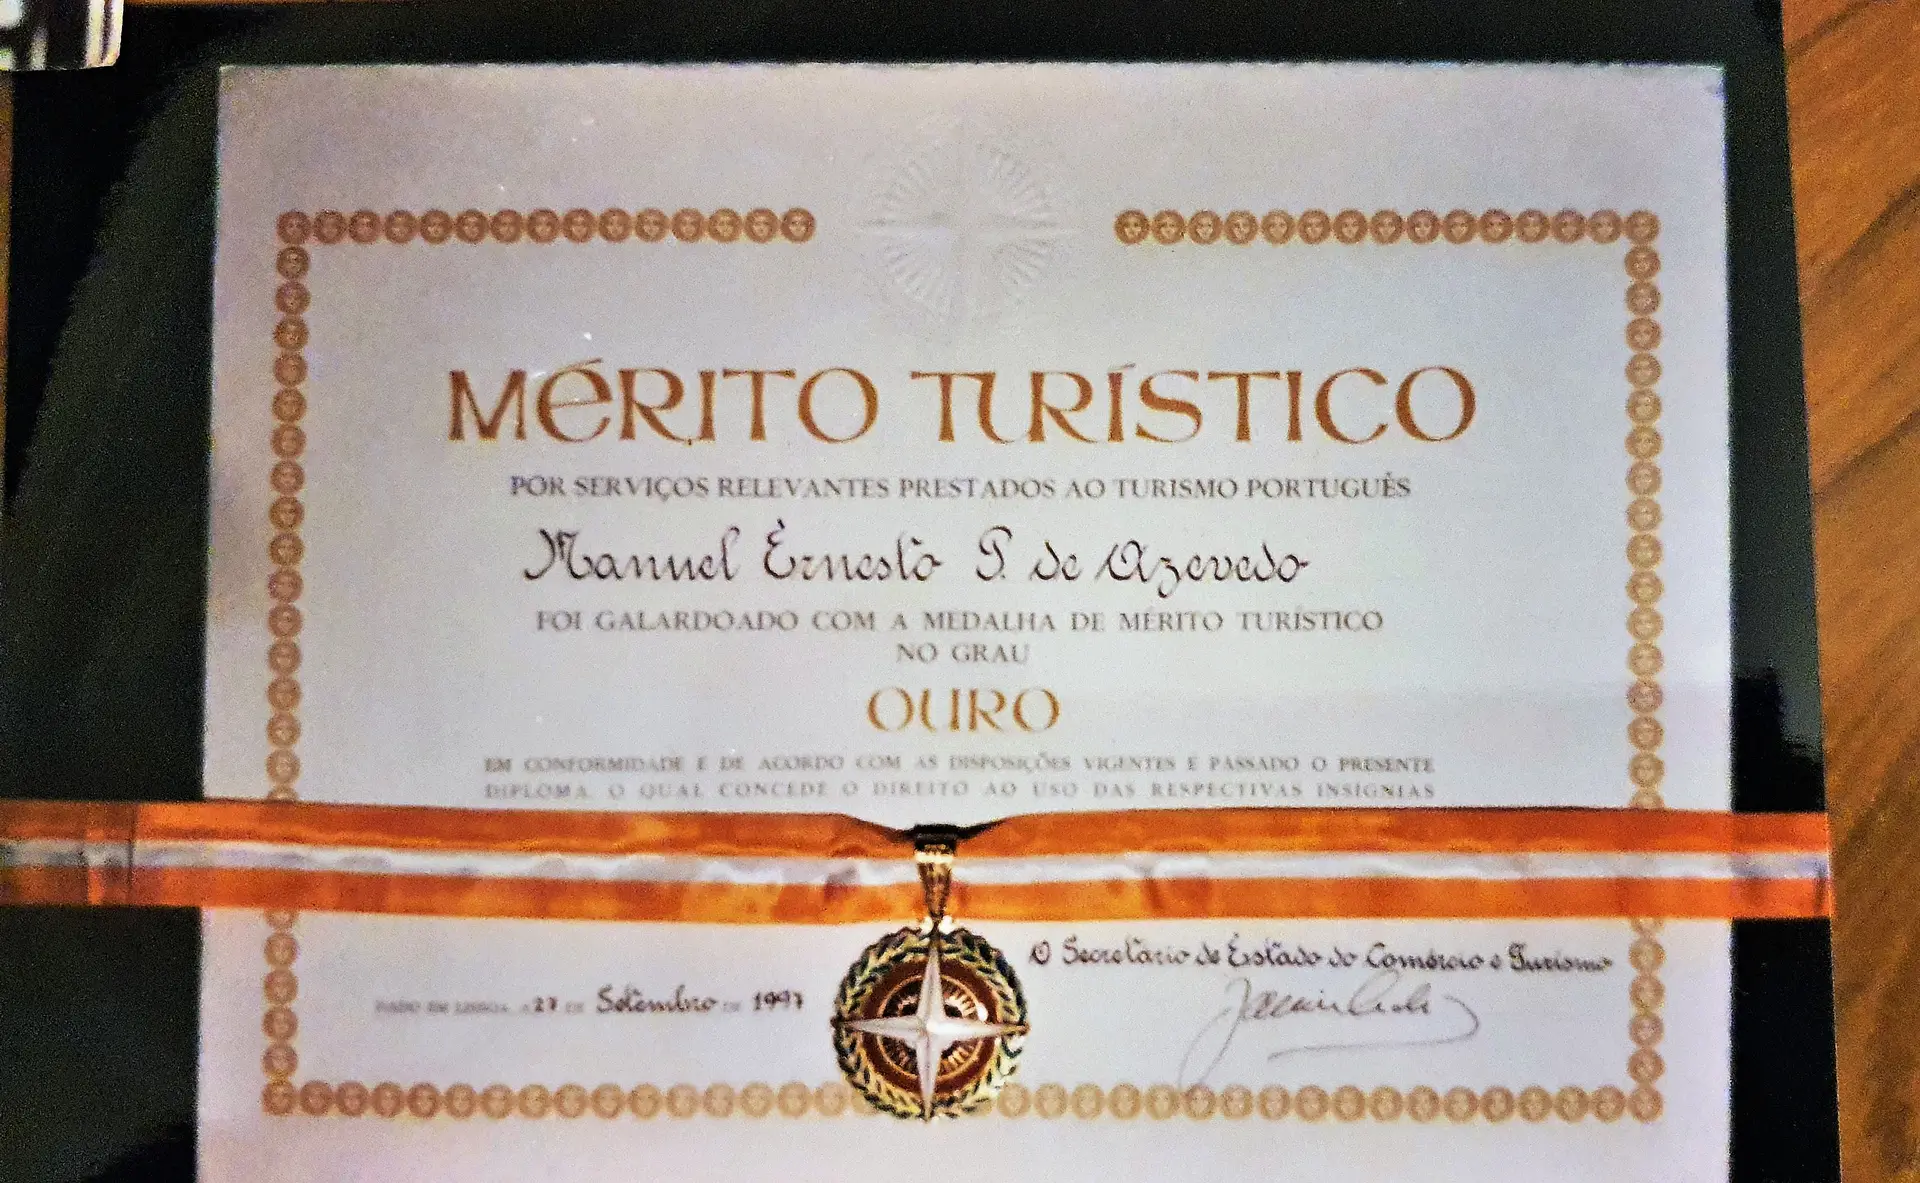 Distinção de Mérito Turístico atribuída a Ernesto Azevedo em 1997